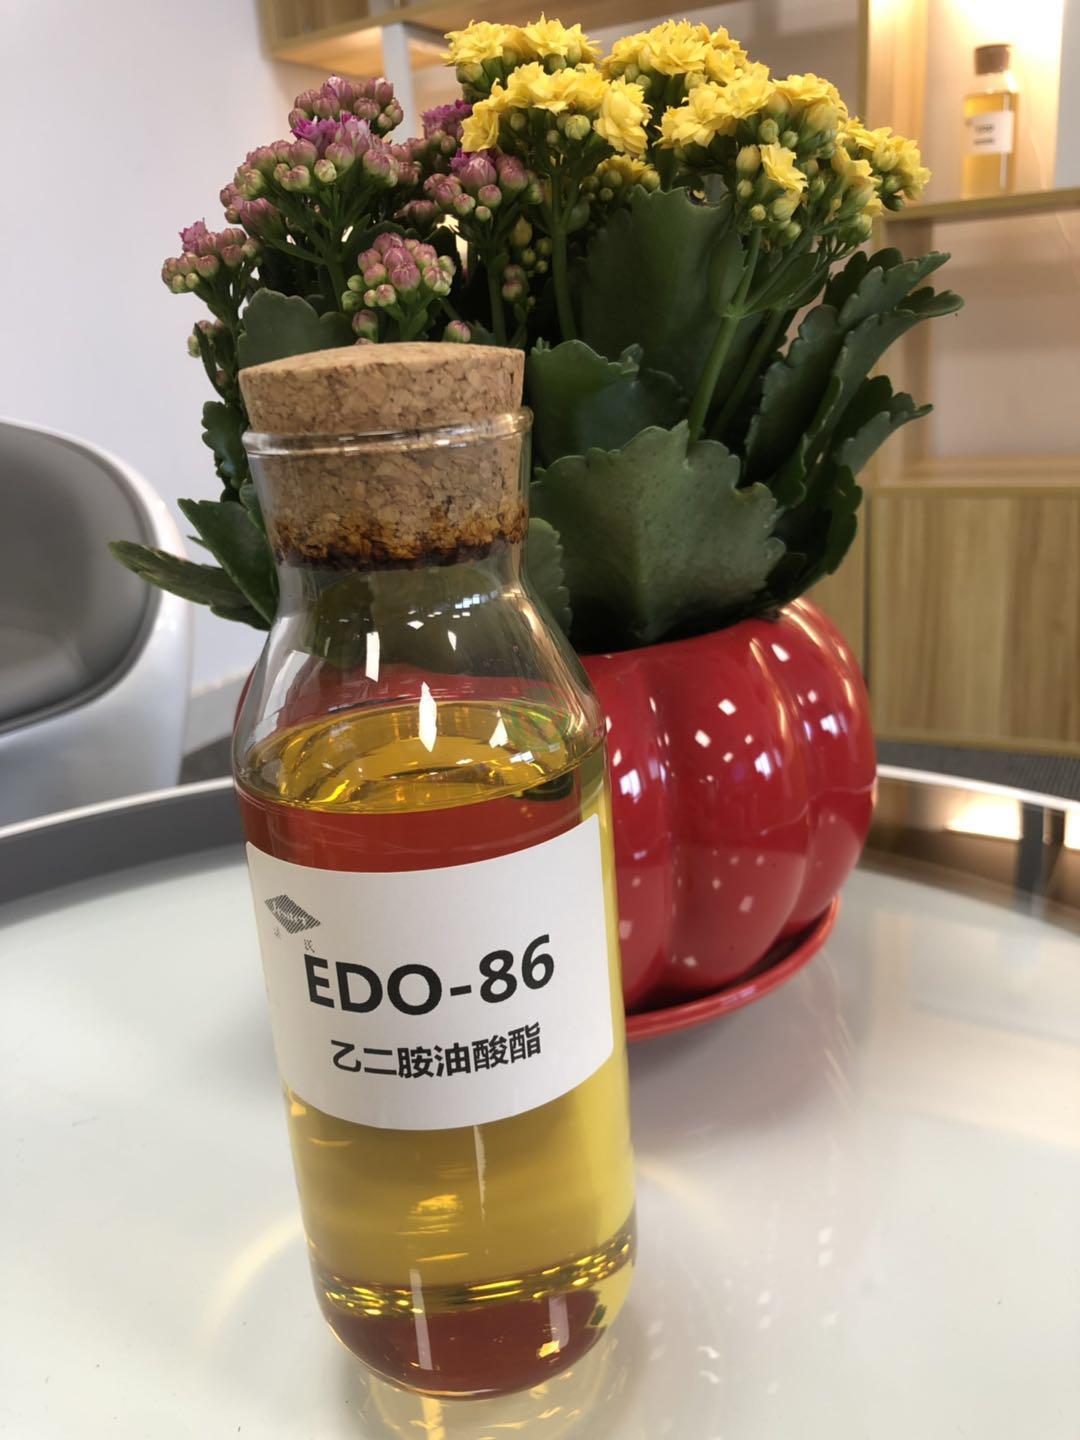 乙二胺油酸酯EDO-86